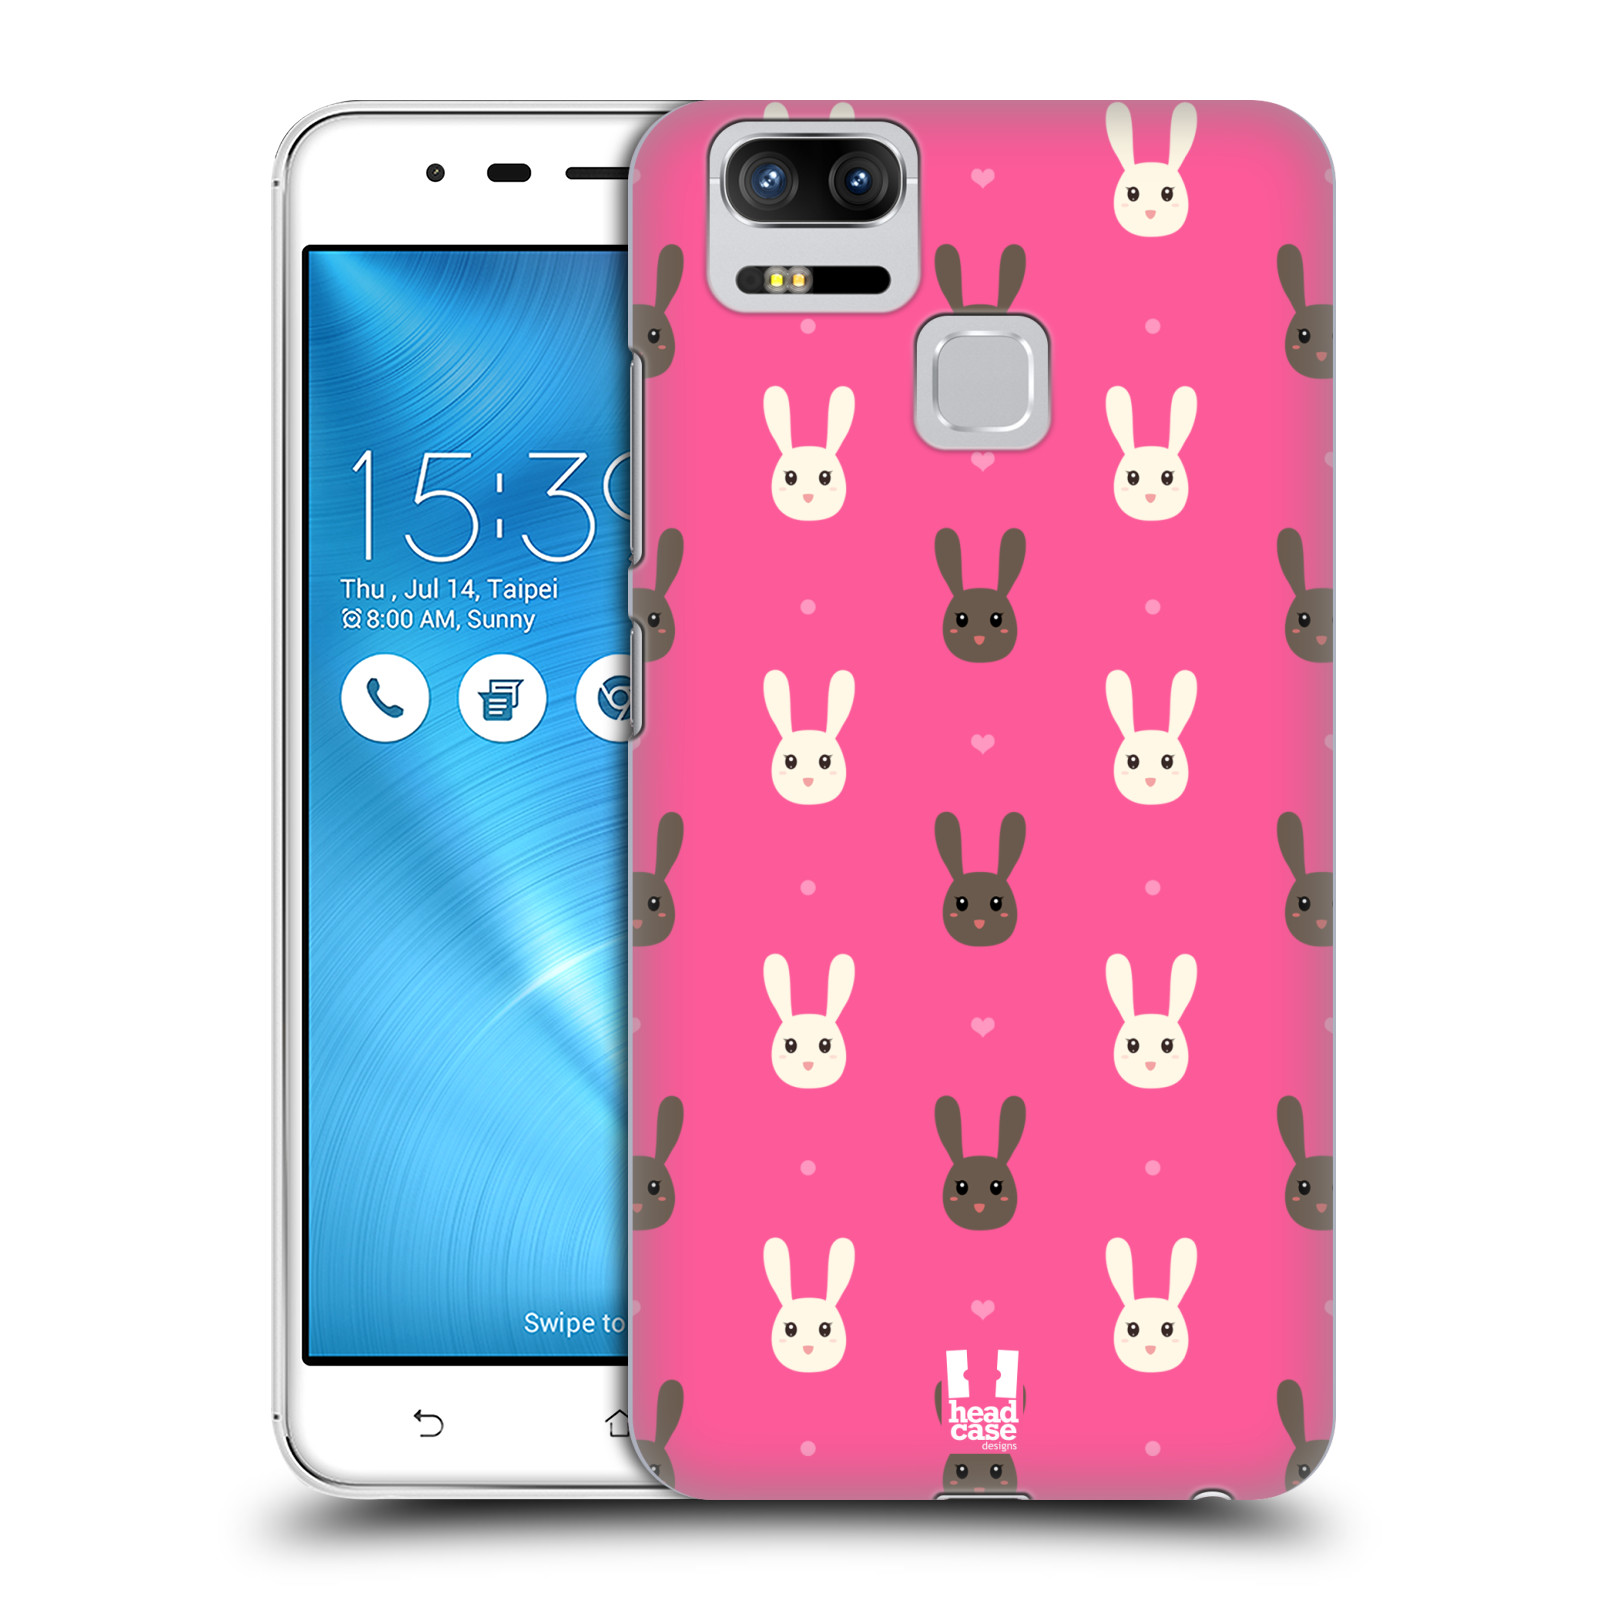 HEAD CASE plastový obal na mobil Asus Zenfone 3 Zoom ZE553KL vzor Barevní zajíčci RŮŽOVÁ hnědý a bílý králíček